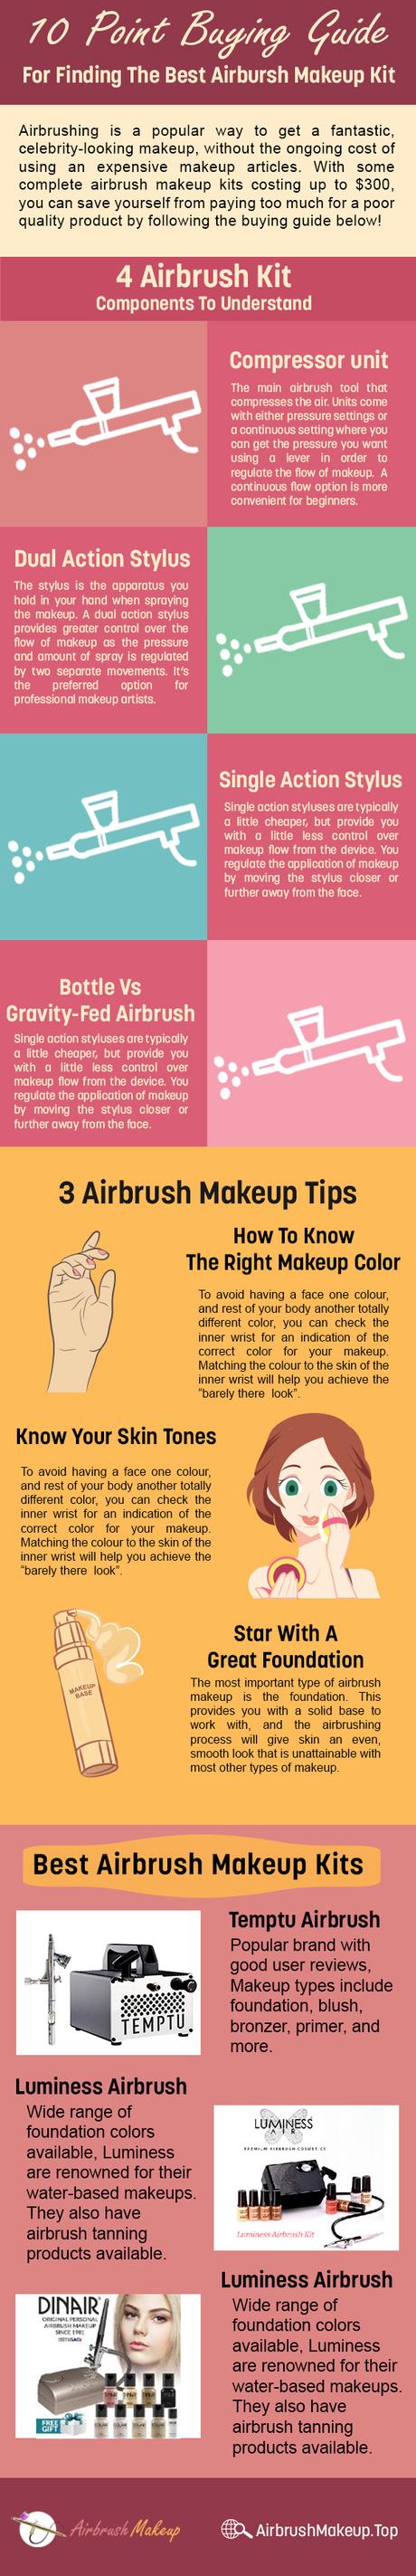 airbrush makeup kit buying guide